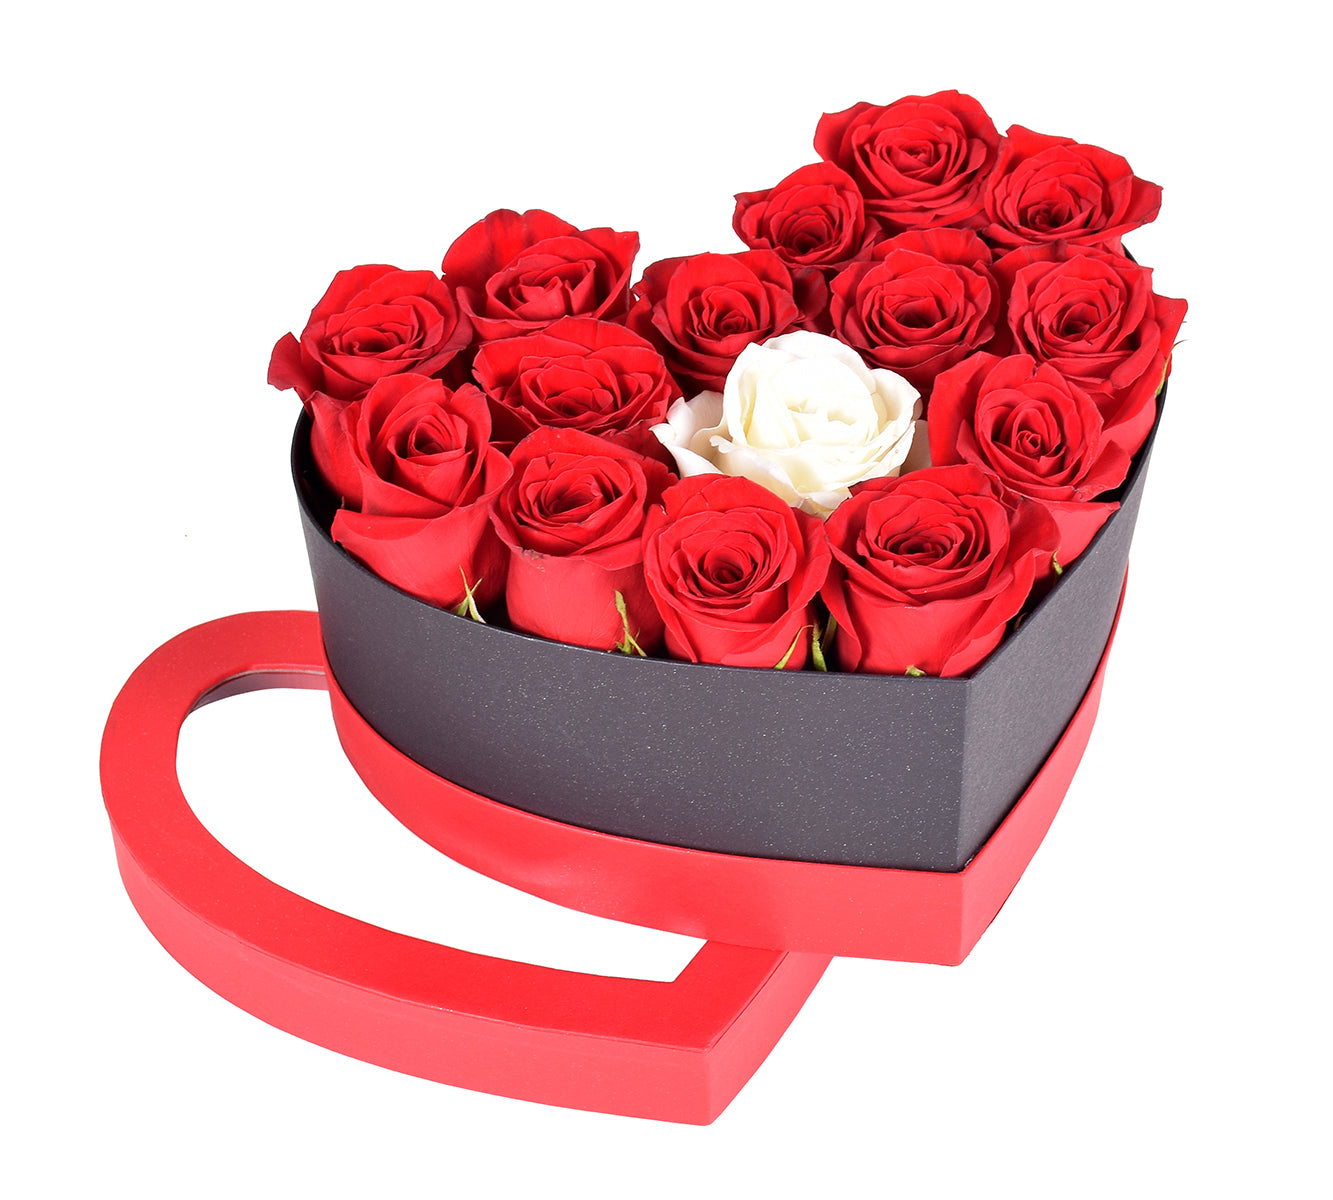 Magical White & Red Roses Heart Box Flower Arrangement 18Roses